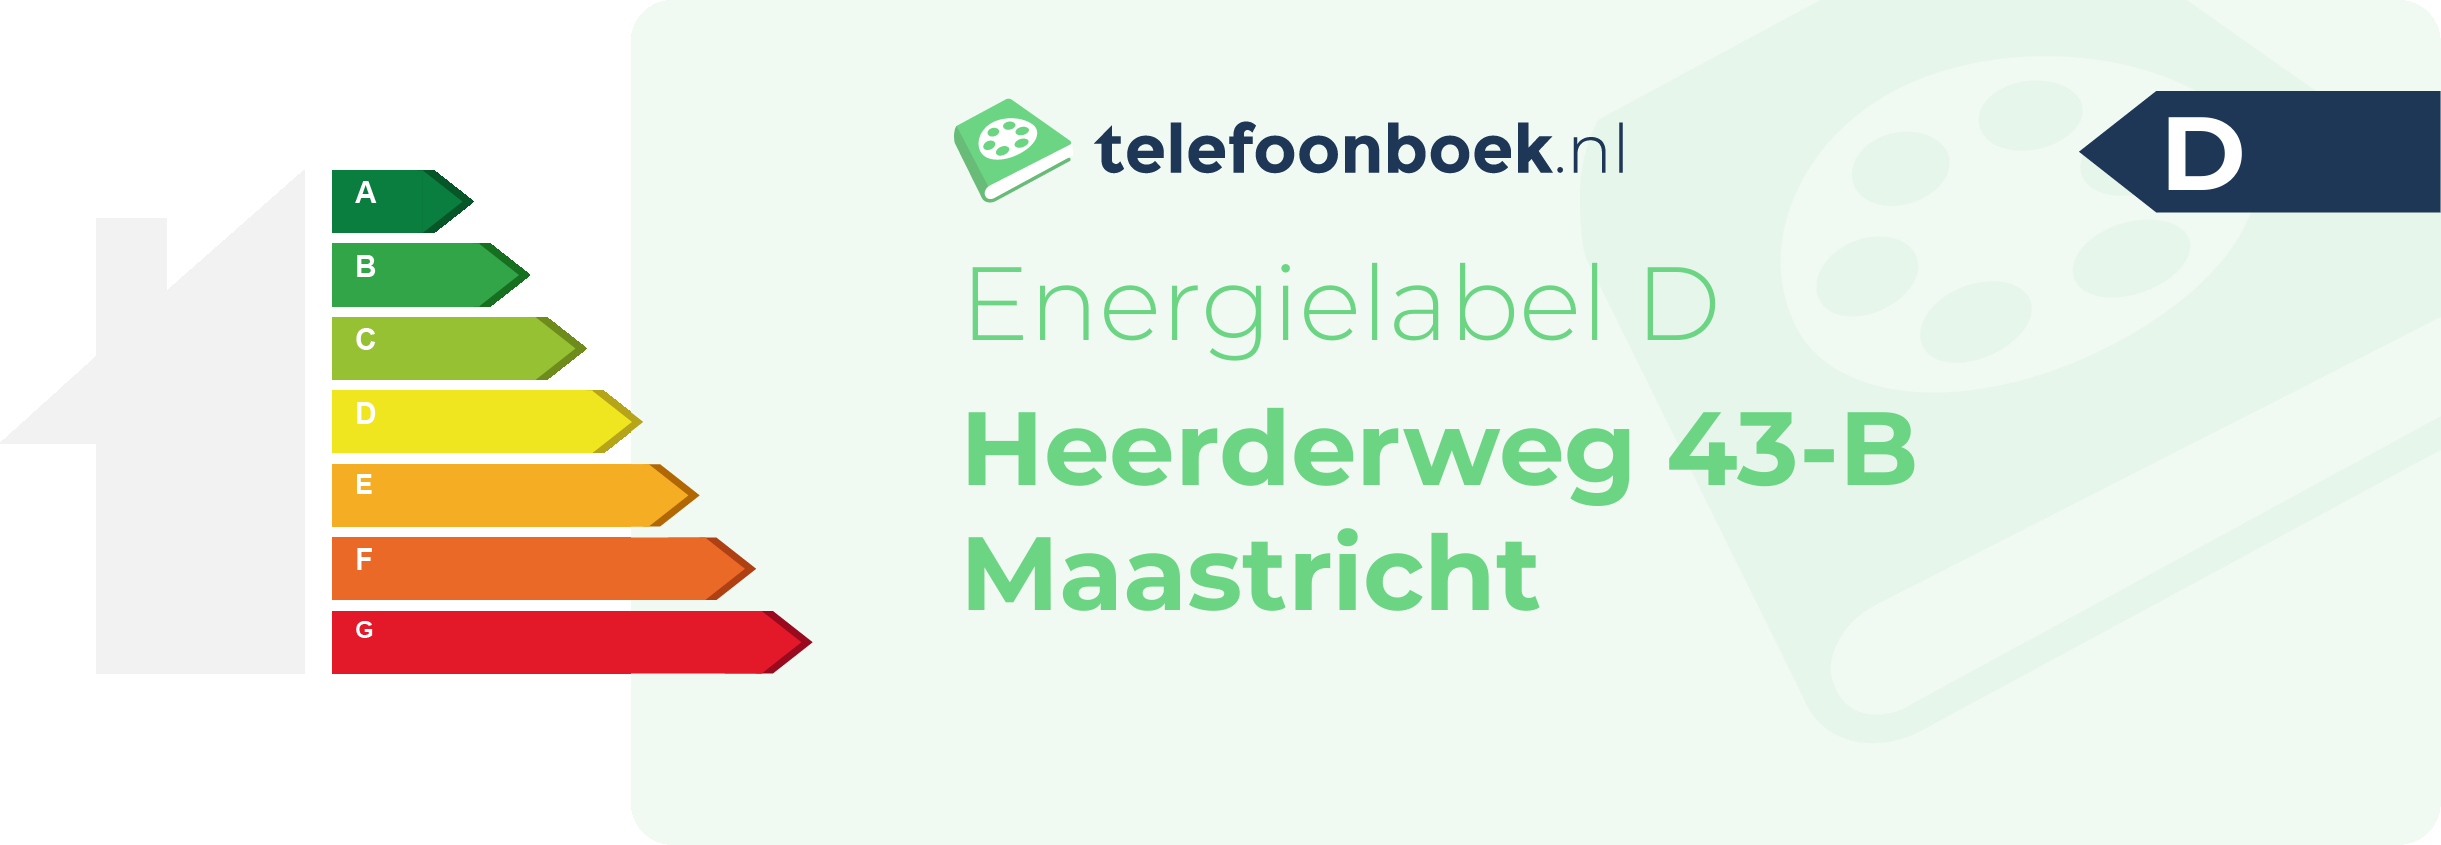 Energielabel Heerderweg 43-B Maastricht